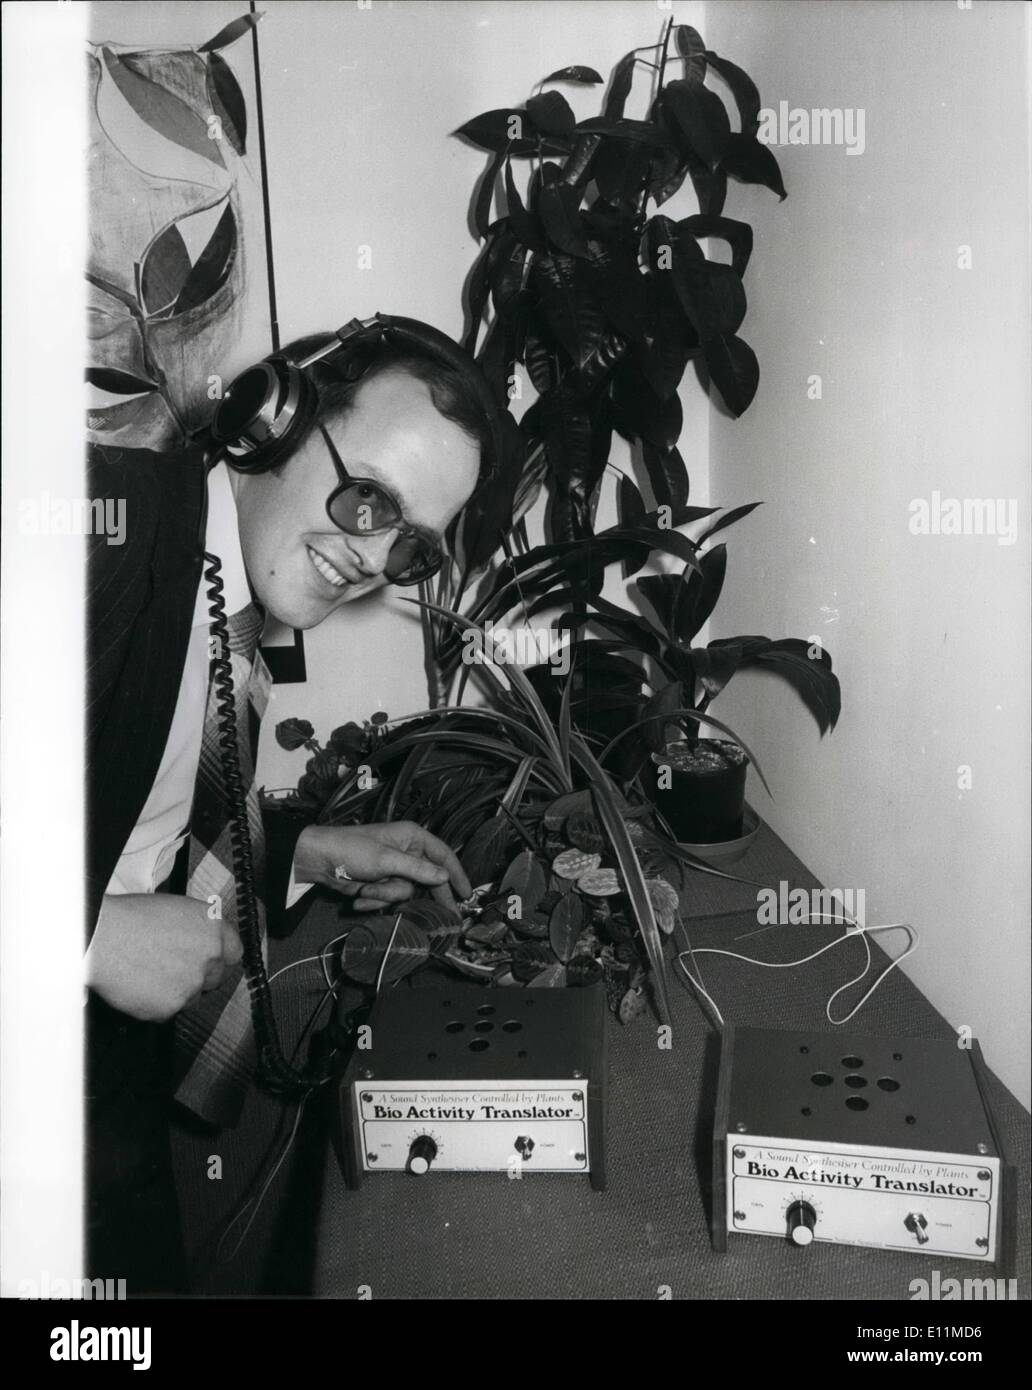 Nov. 11, 1978 - Bio Attività traduttore per ascoltare il mondo segreto delle piante.: per la prima volta nel Regno Unito sotto forma di kit, il concetto rivoluzionario di un amplificatore biologico e sintetizzatore Suono in una sola unità, la "Bio Attività' Traduttore un elettrodo è agganciato attraverso la pianta foglia e la bicelectric segnali vengono poi rilevati da un amplificatore speciali entro il transtator, questi segnali sono usati per controllare la produzione del suono da un sintetico in modo tale che le sequenze di note prodotte seguire nel ritmo tono e volume le sempre mutevoli segnale dall'impianto Foto Stock